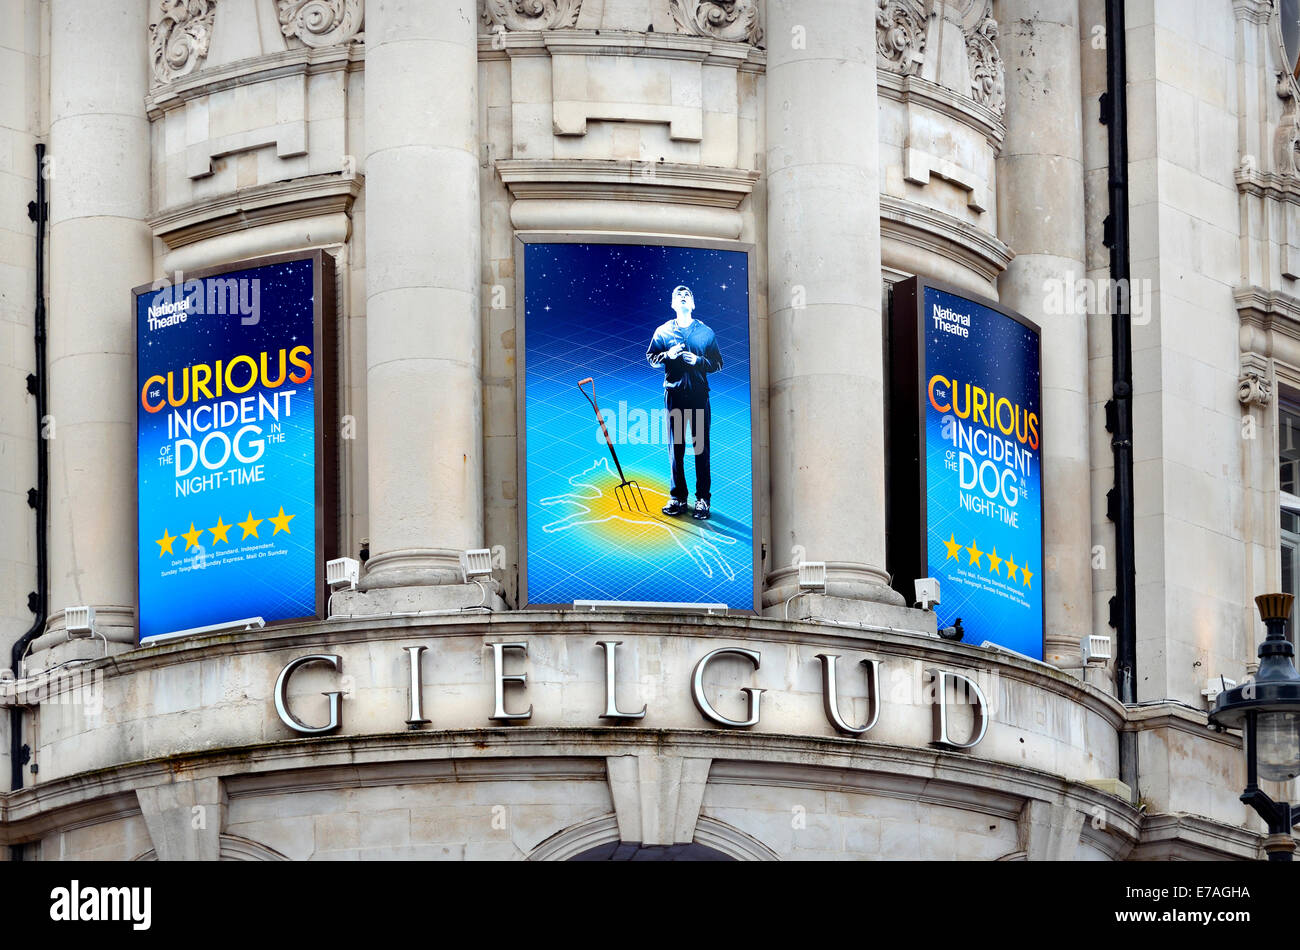 Londres, Angleterre, Royaume-Uni. 'Bizarre incident du chien pendant la nuit' au Gielgud Theatre, Shaftesbury Avenue, 2014 Banque D'Images